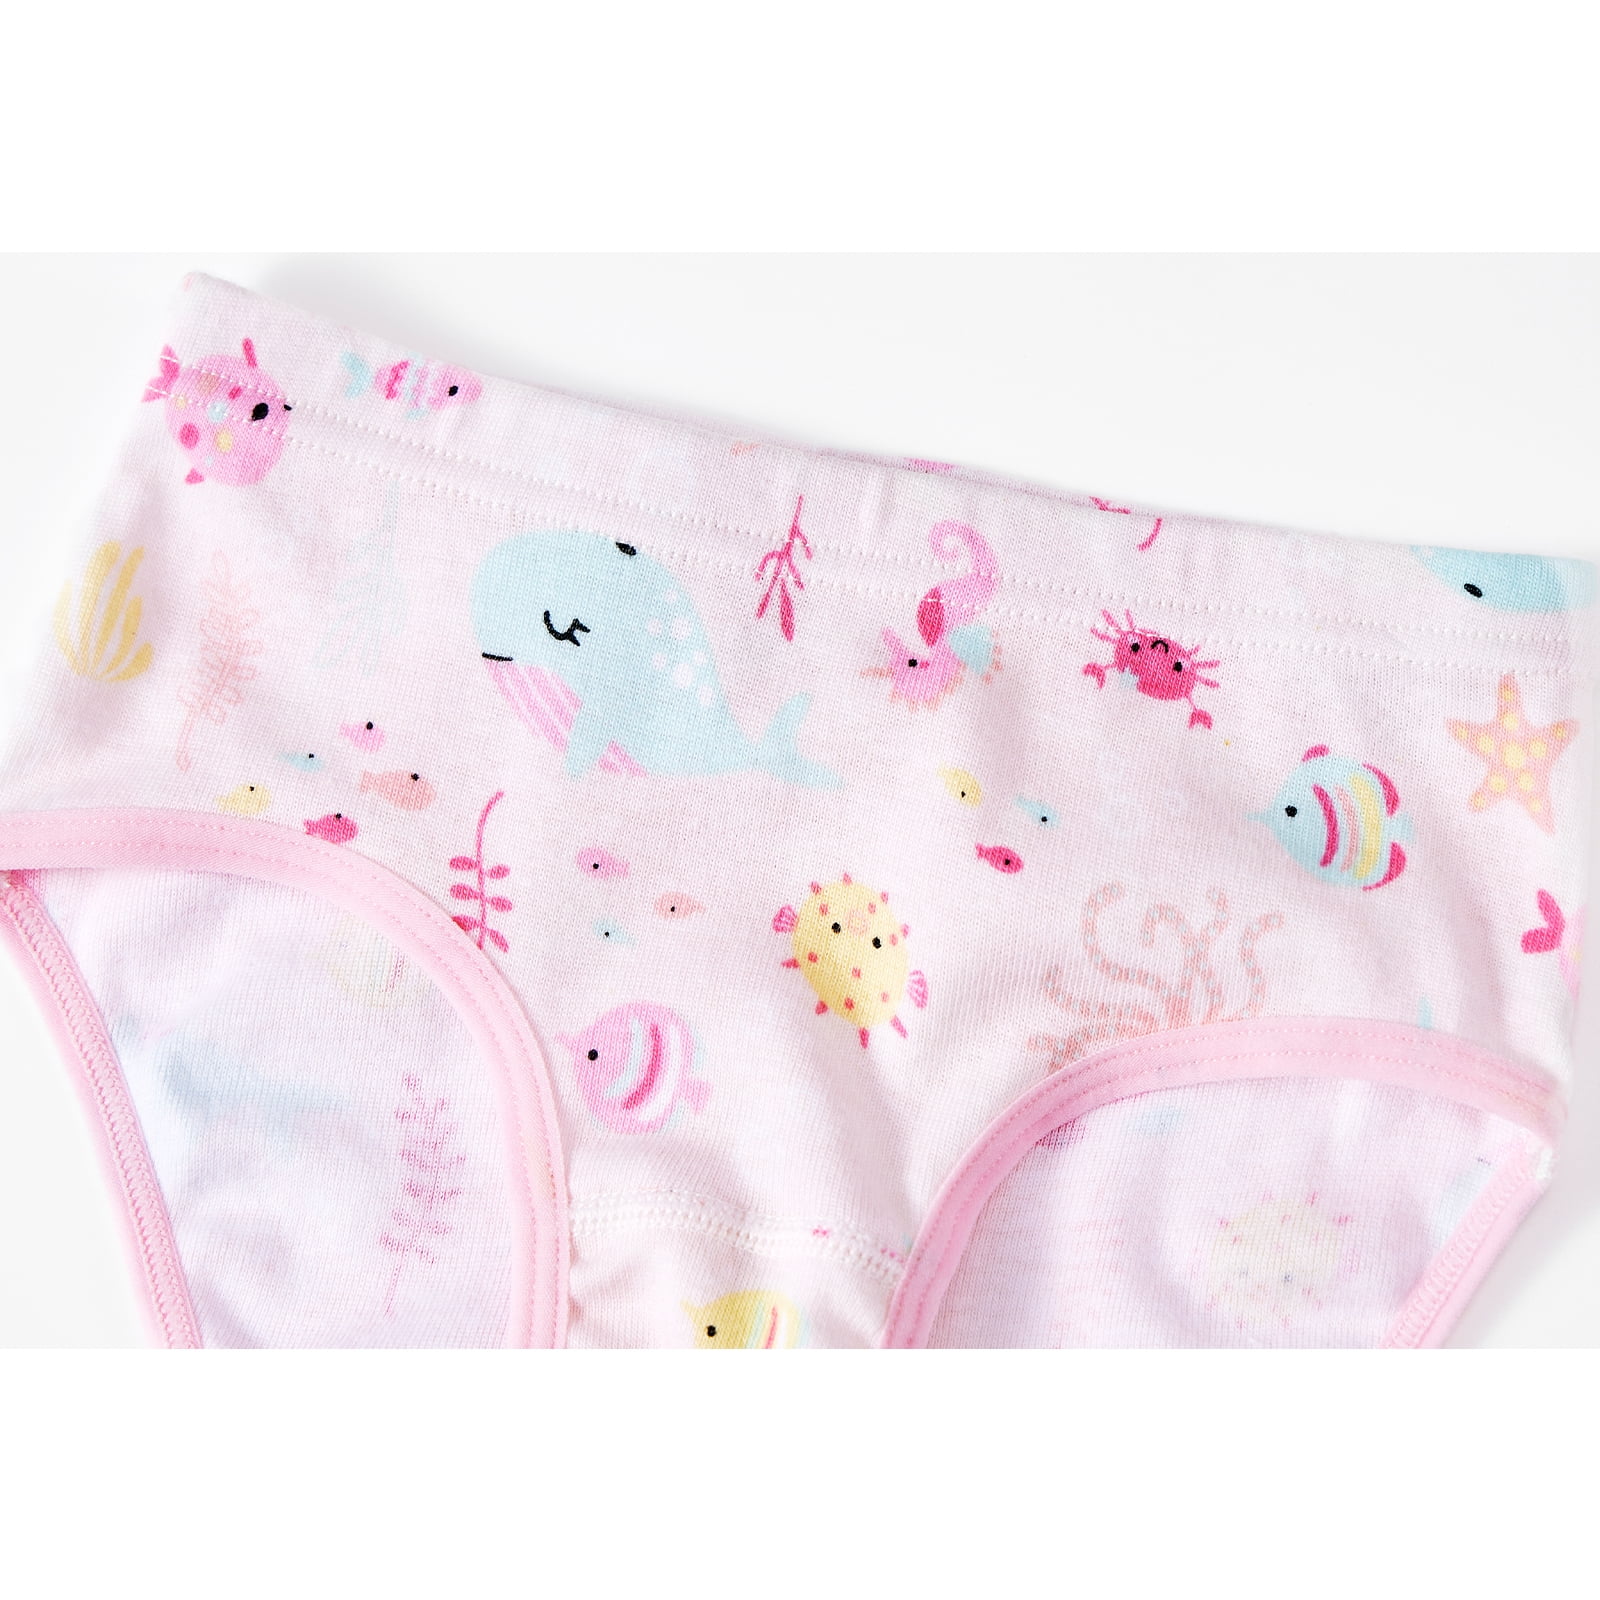 Kids Children Girls Underwear Cute Print Briefs Shorts Pants Cotton